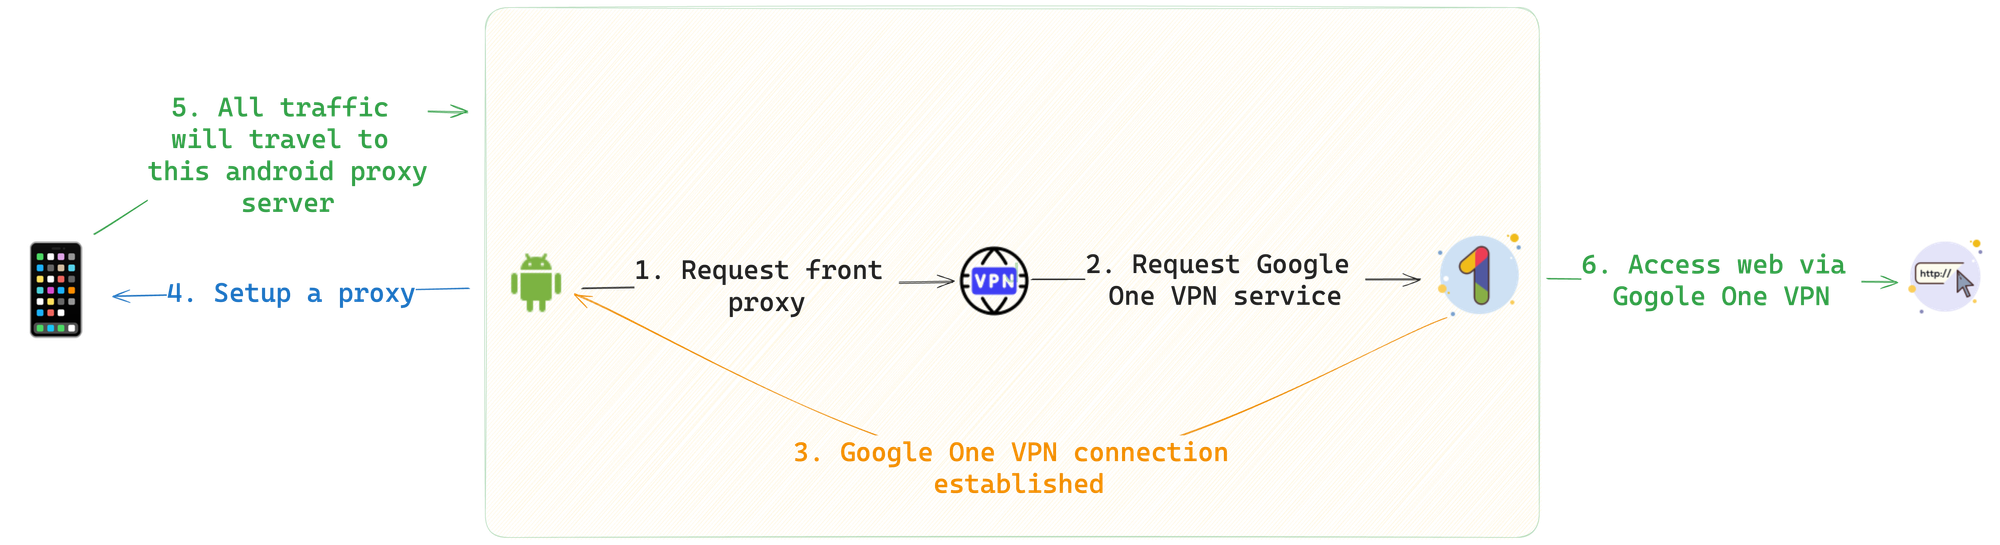 将连接了 Google One VPN 的安卓设备作为一个代理服务器供其他设备访问原理图